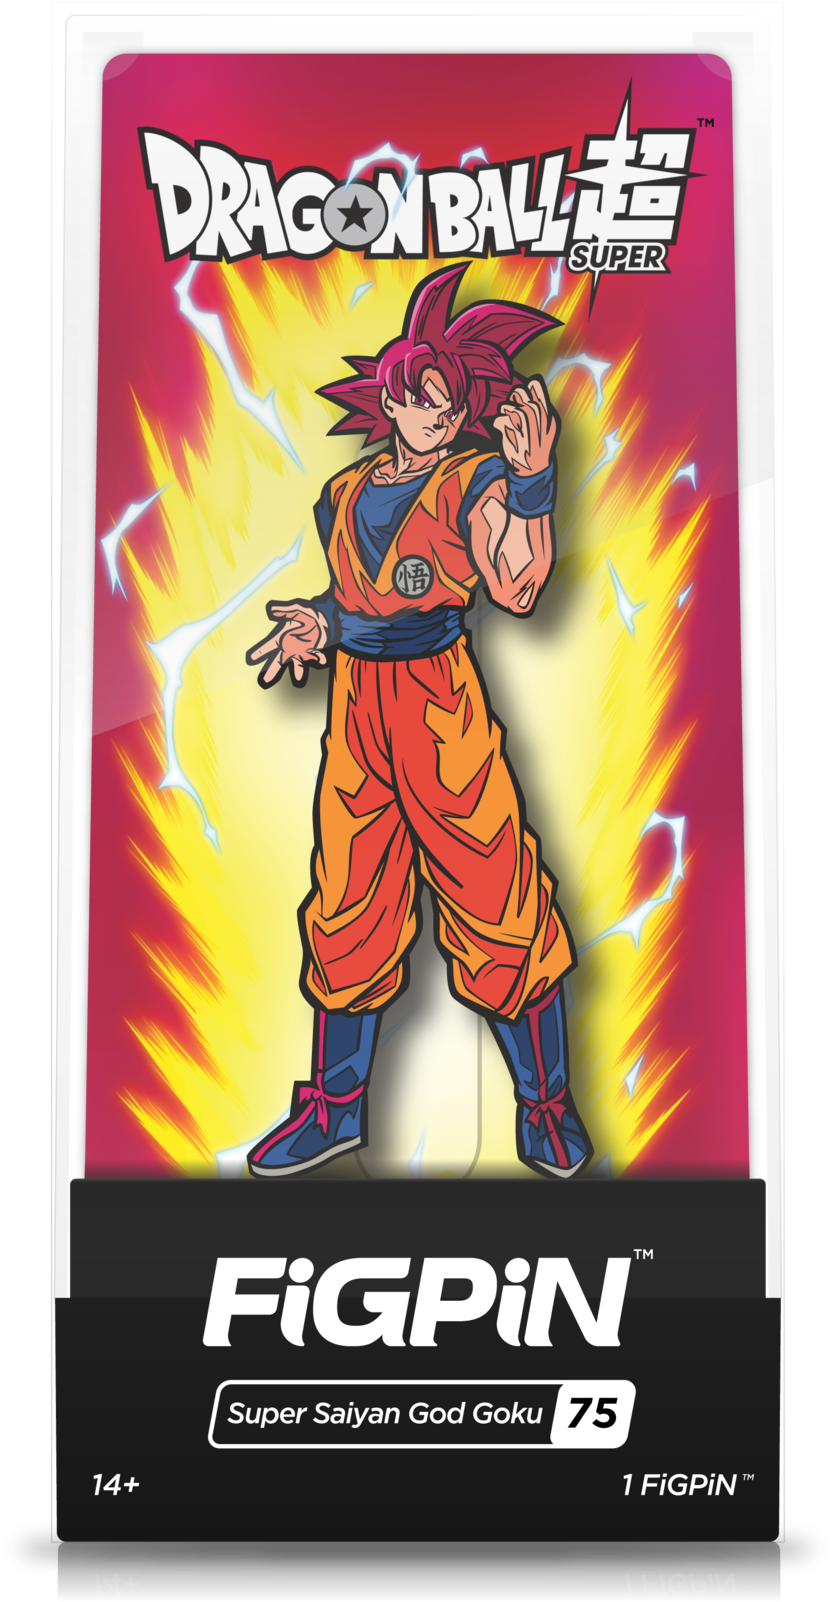 Super Saiyan God Goku Clipart (831x1602), Png Download